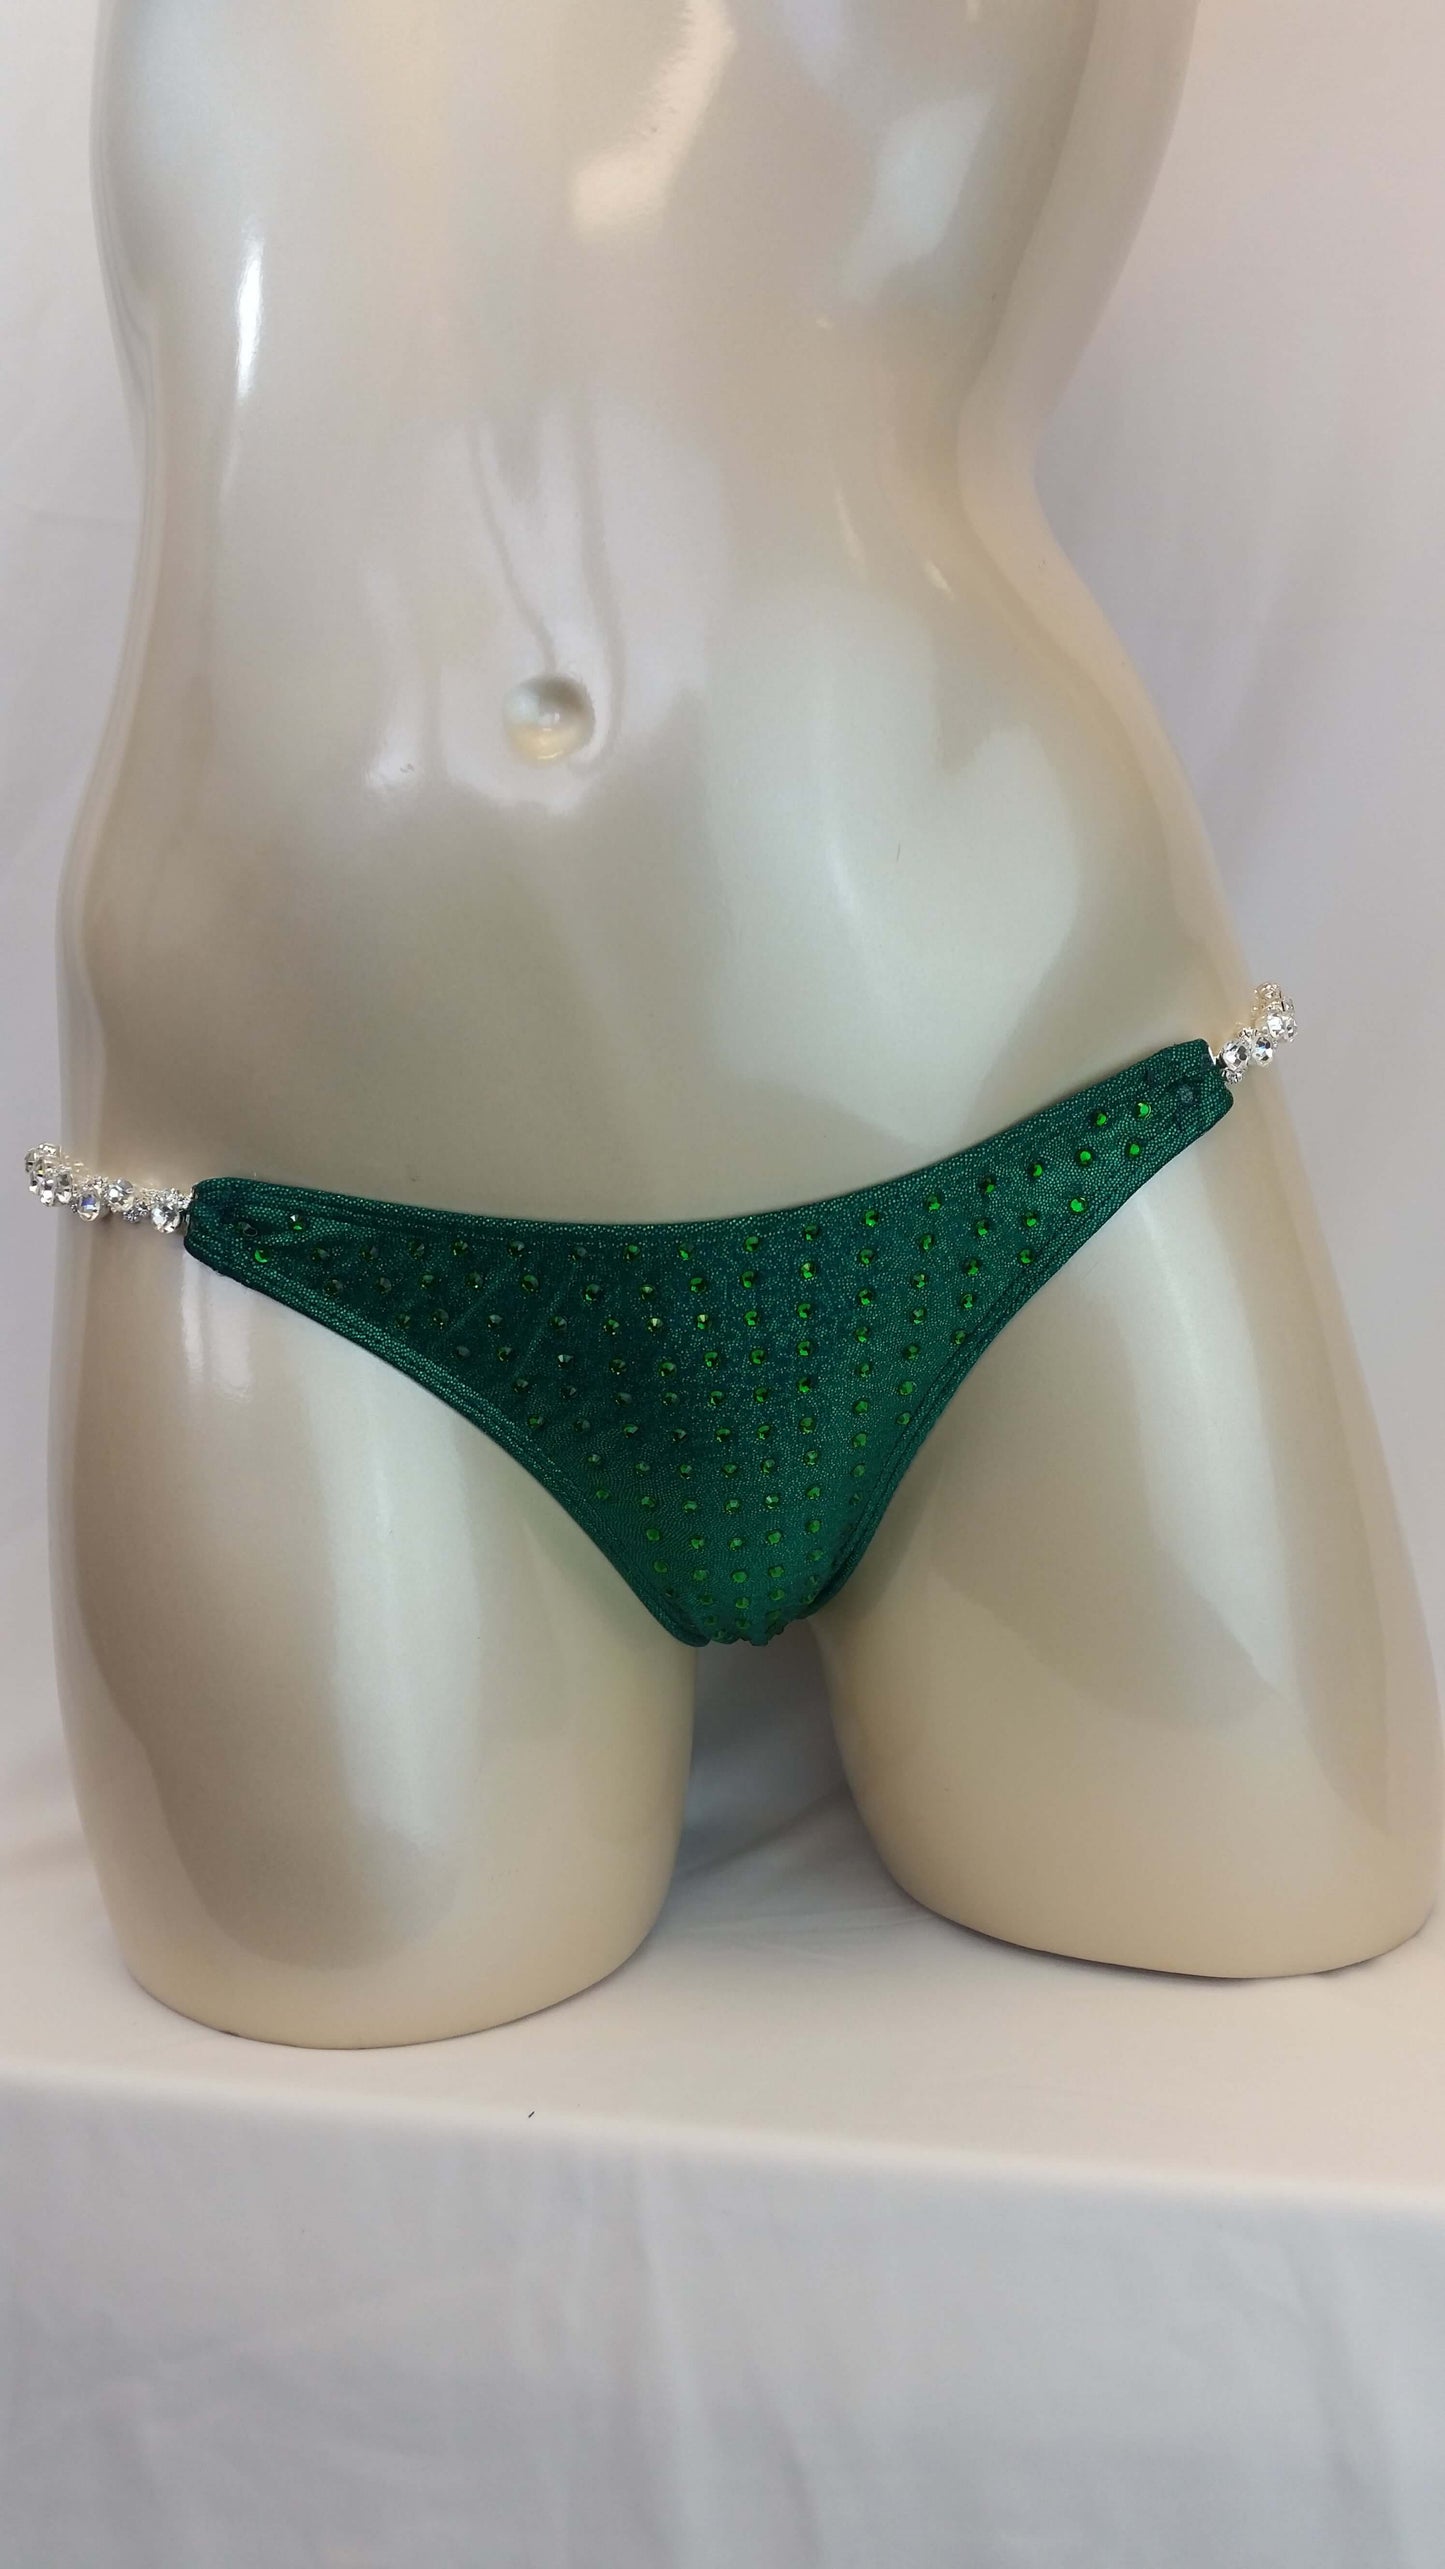 Emerald green Figure suit bikini with Emerald green rhinestones